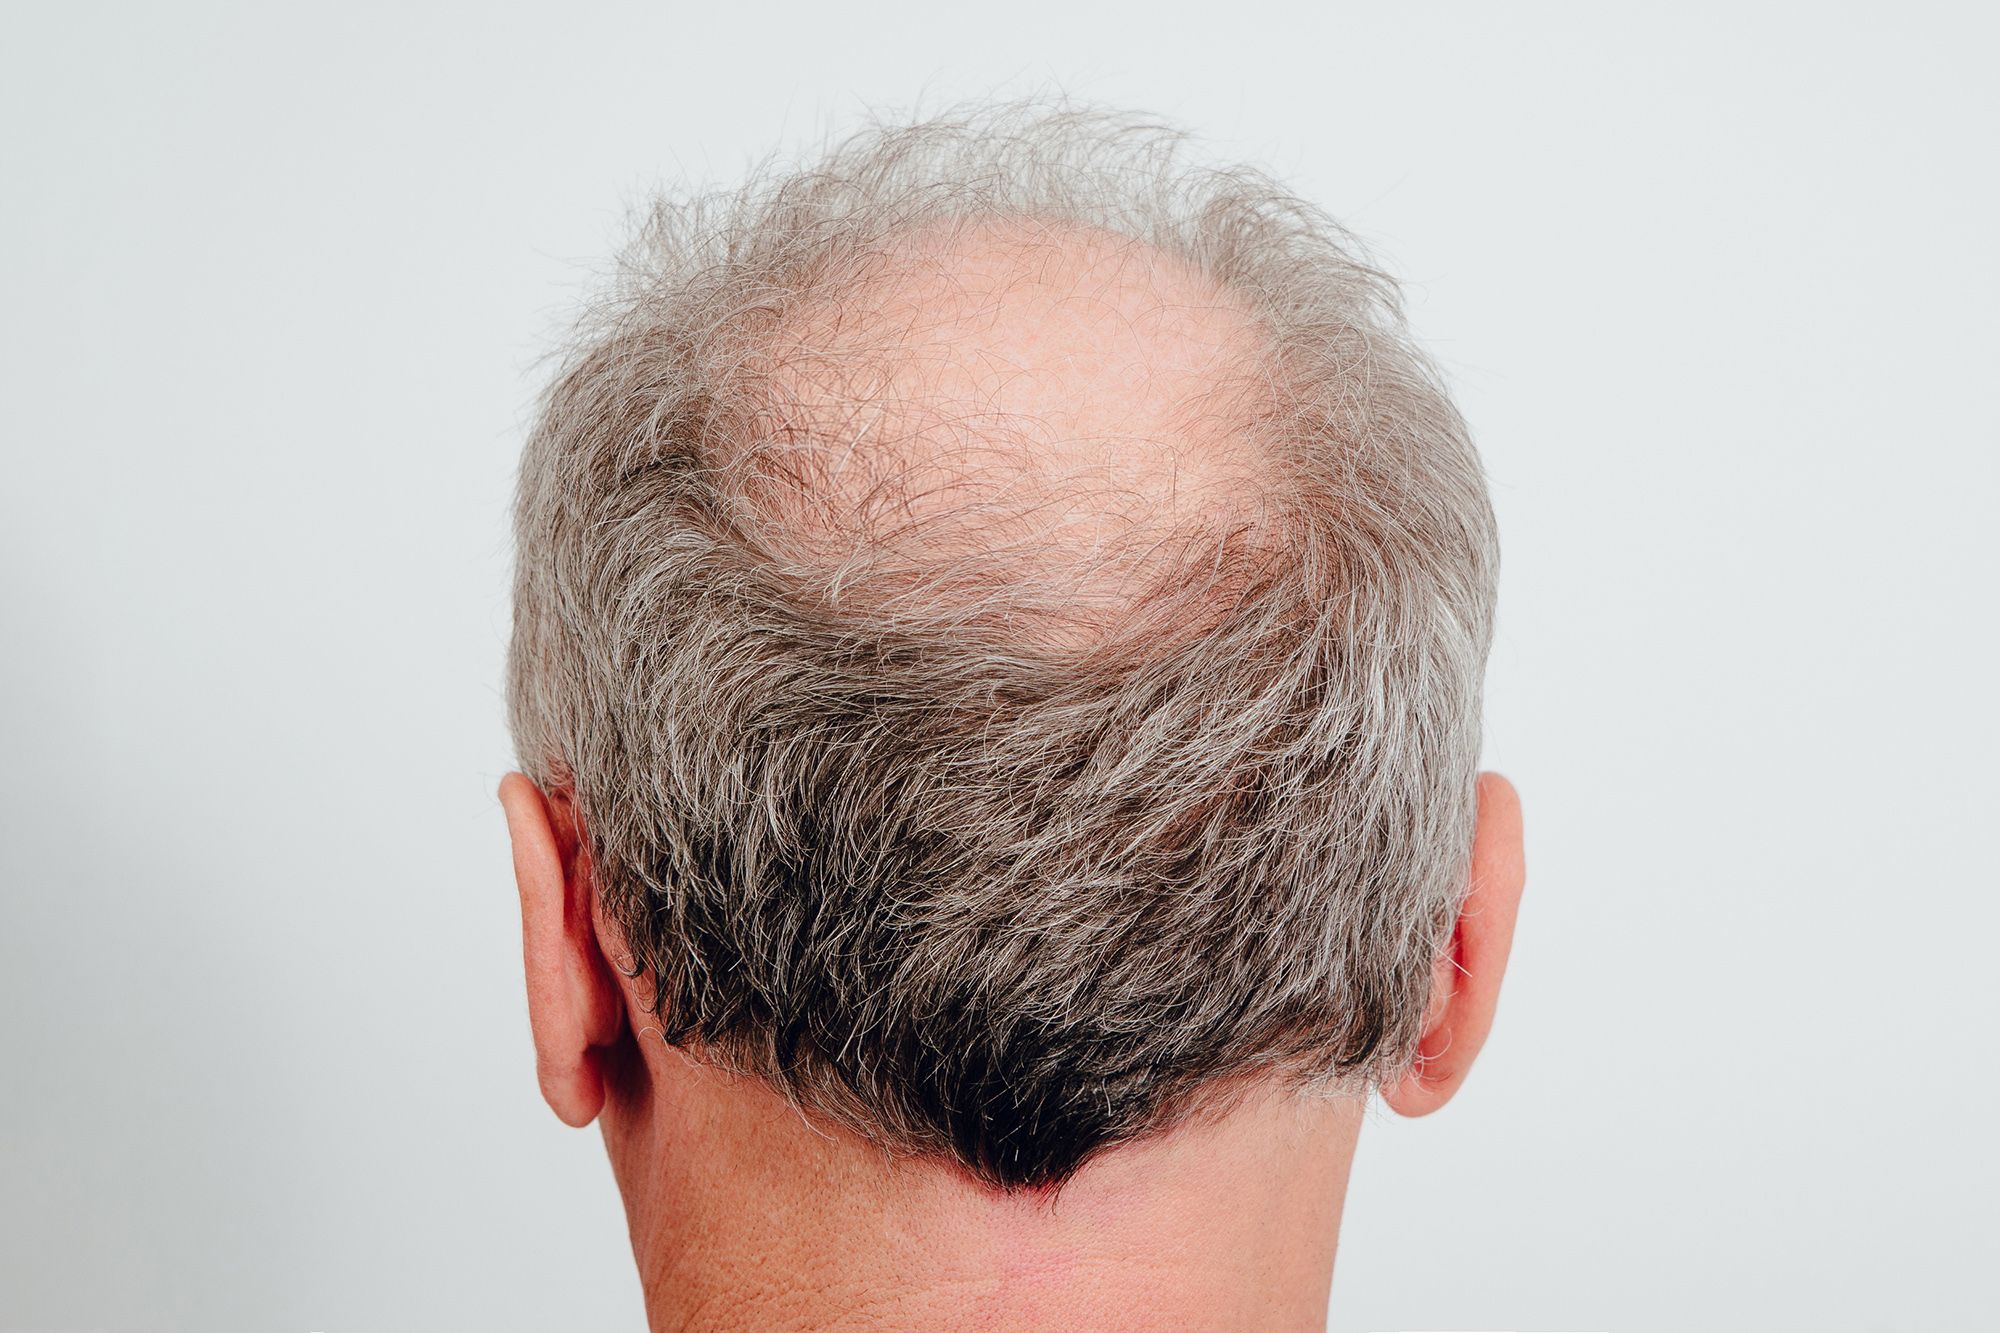 5 Nguyên nhân rụng tóc ở nam giới và cách điều trị hiệu quả